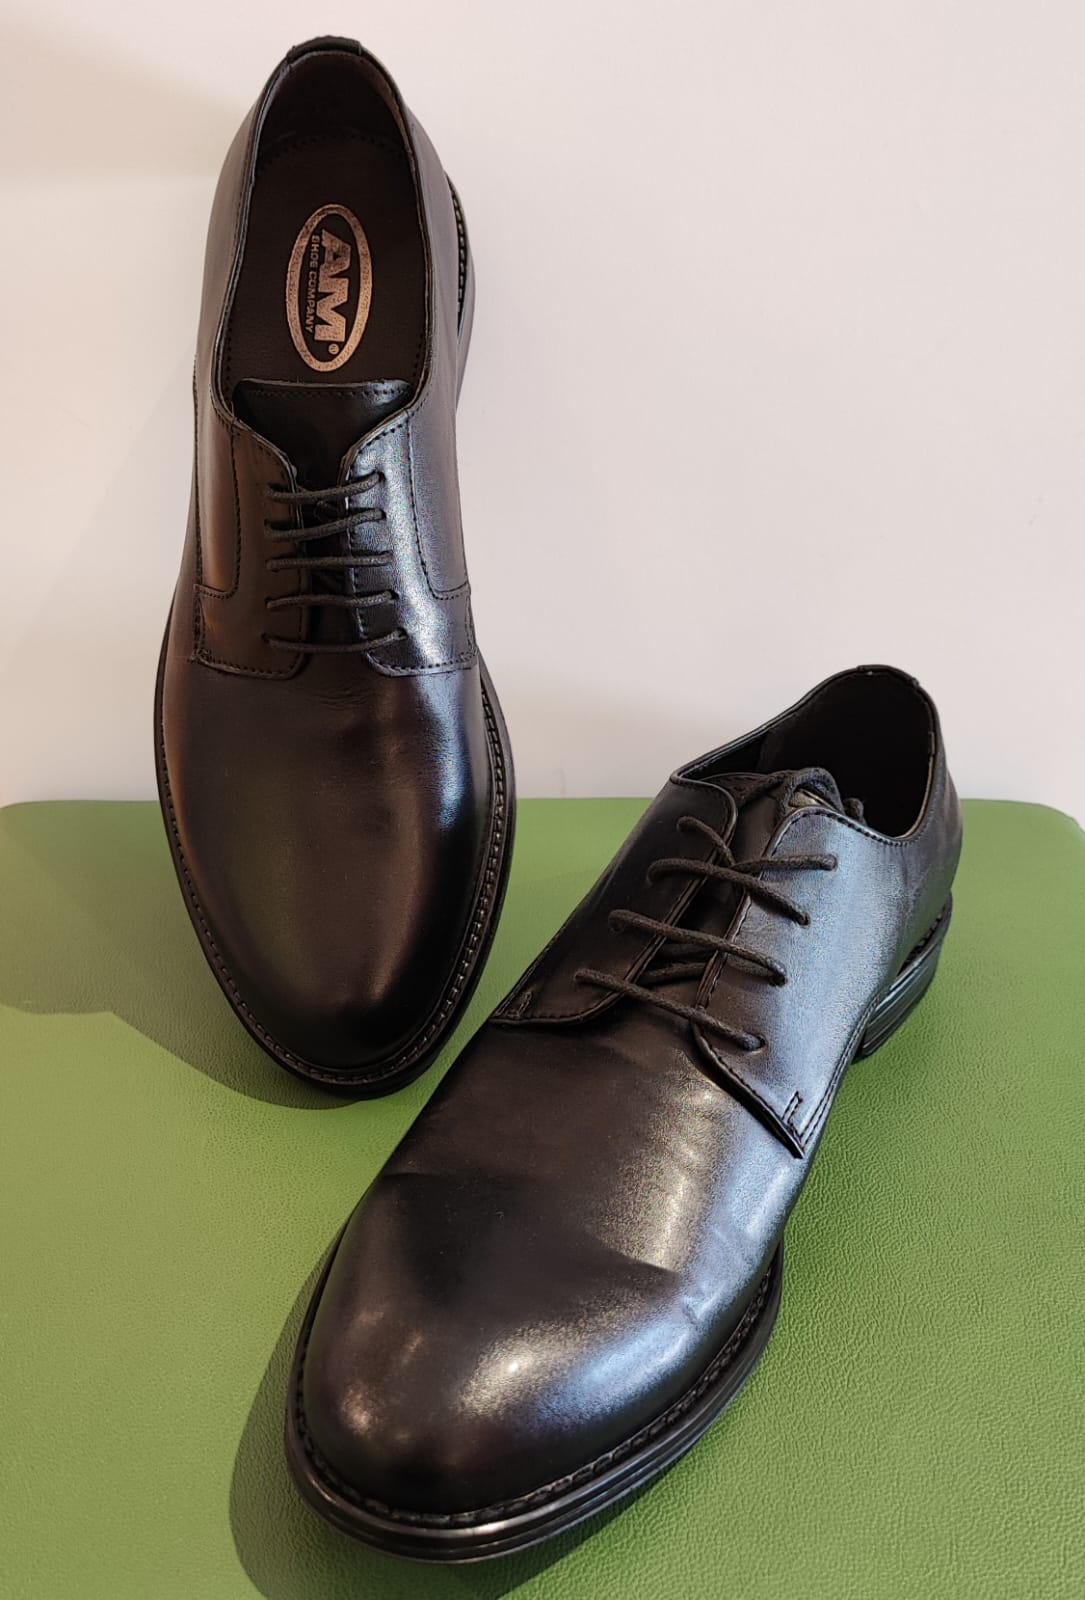 Scarpe eleganti uomo, collezione Deichmann calzature